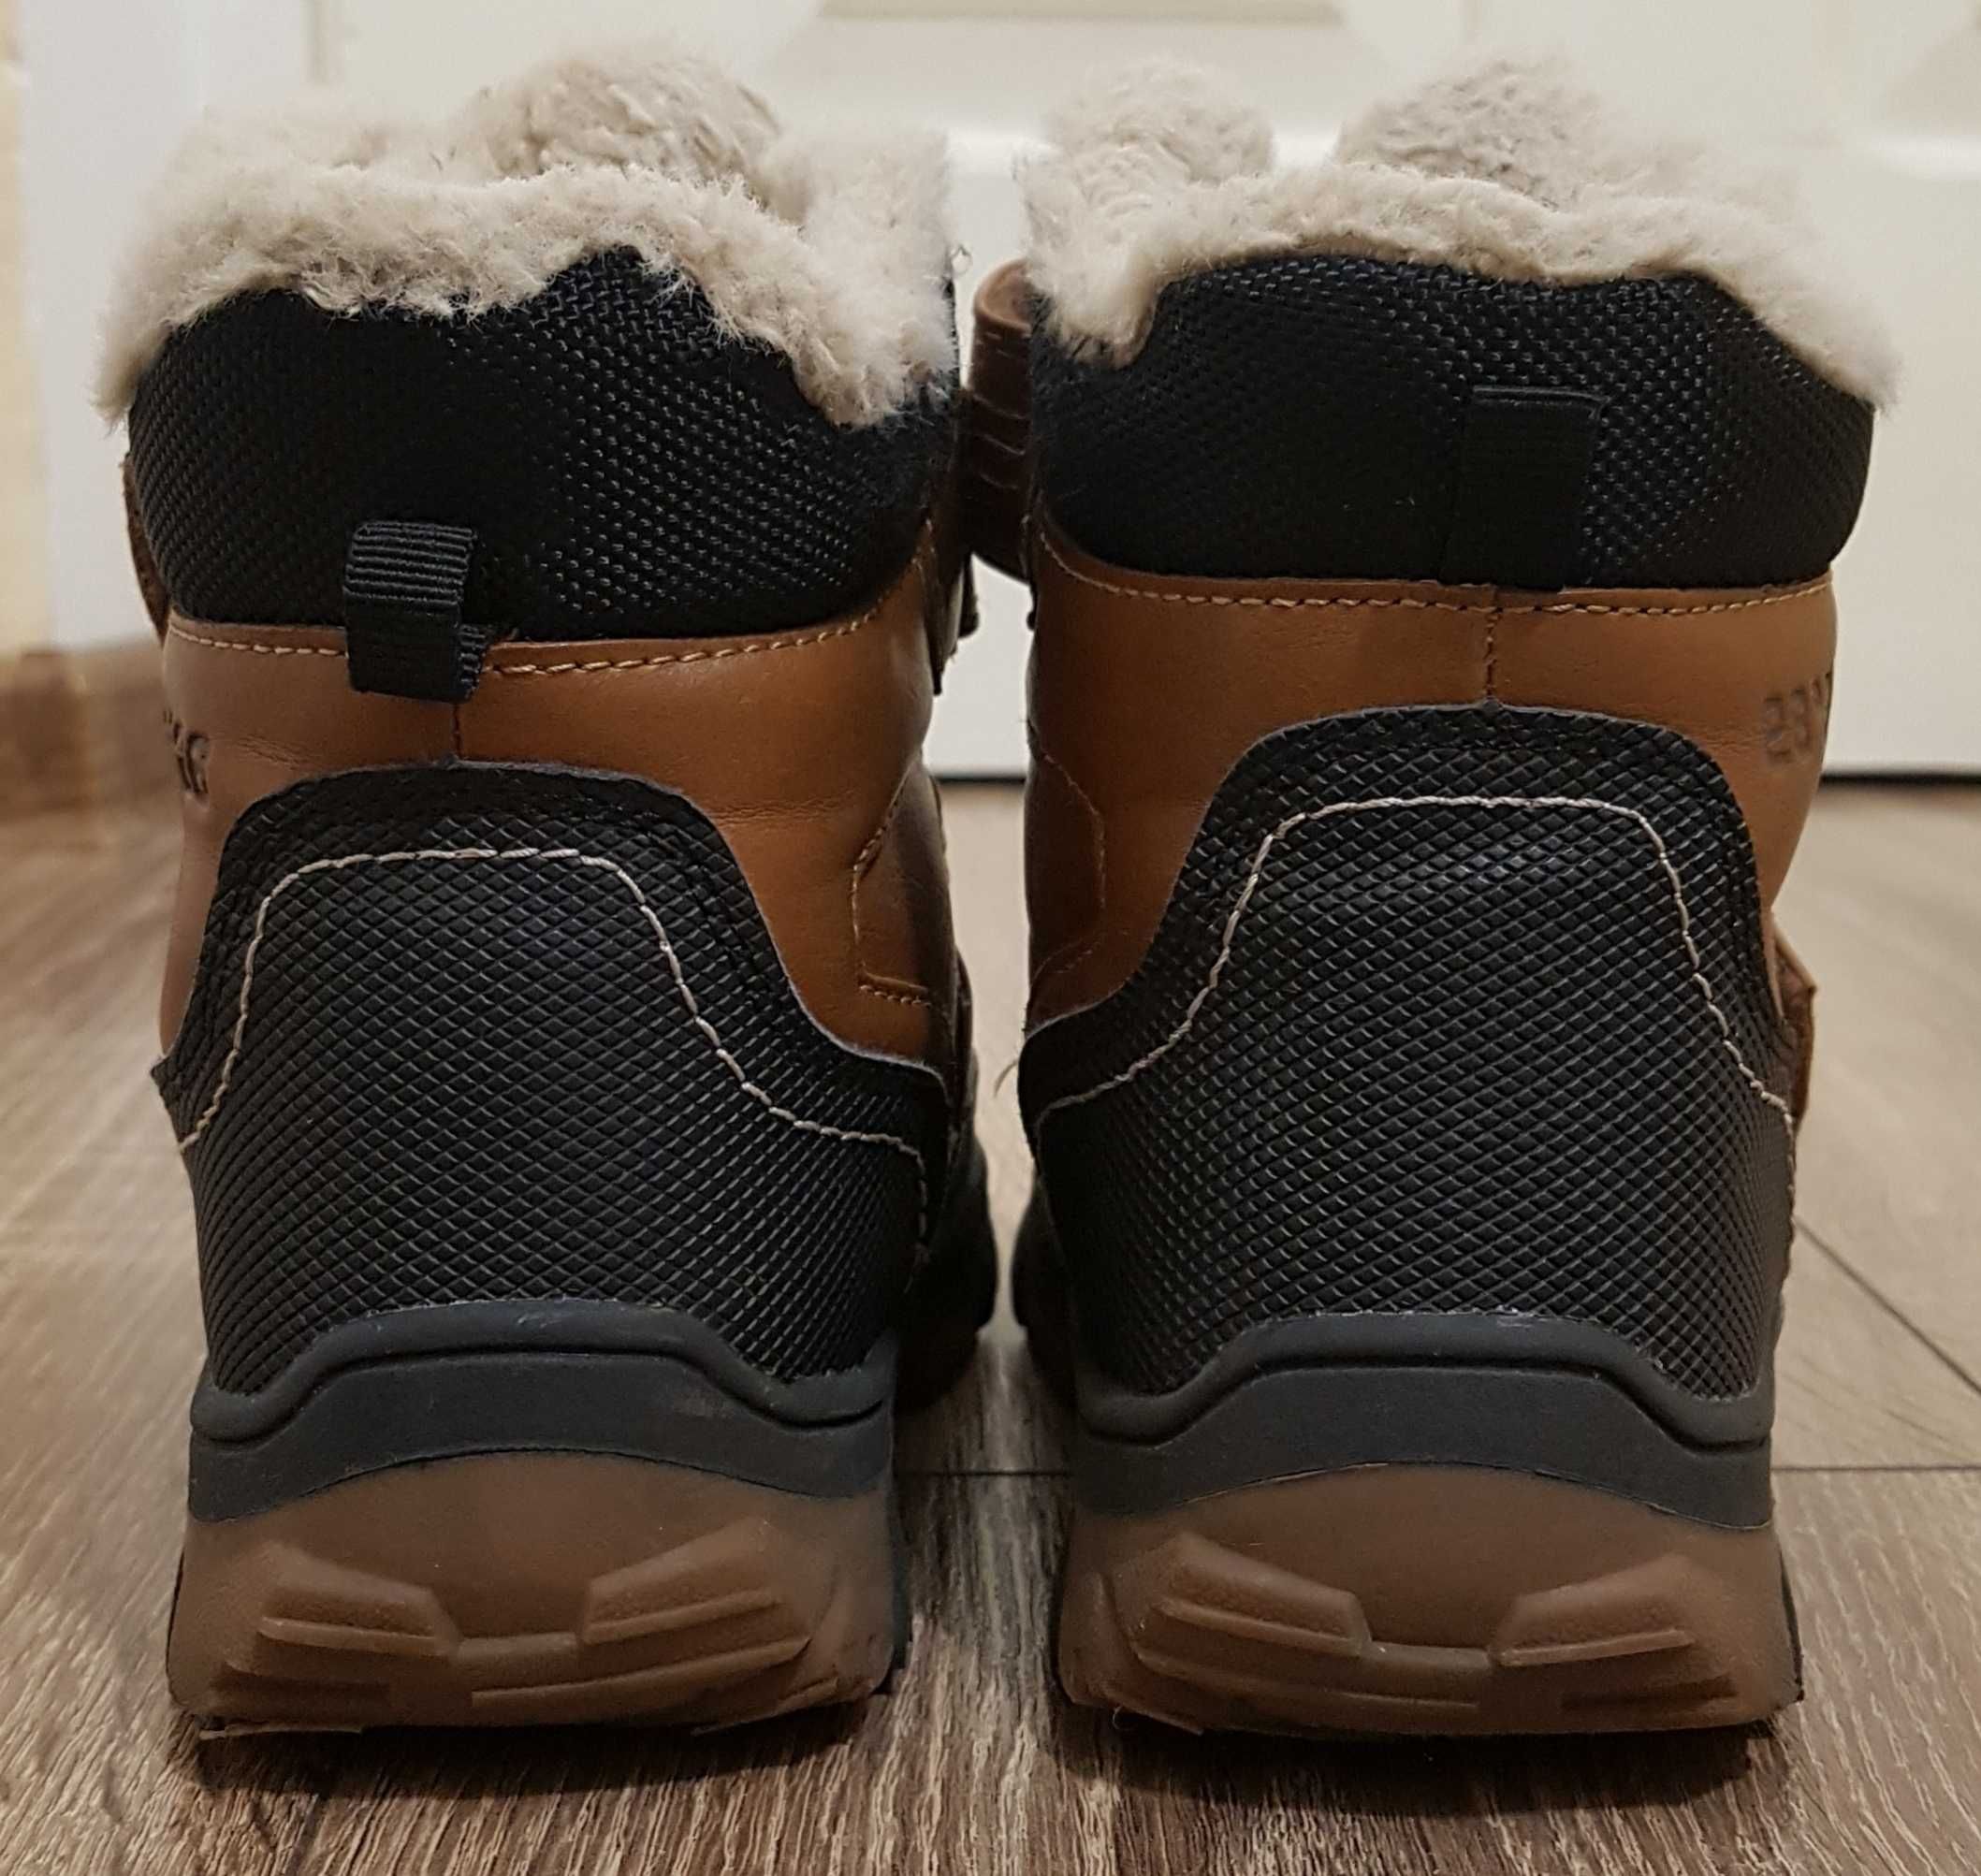 Buty zimowe ocieplane rozmiar 30, długość wkładki 19,5cm COOL CLUB